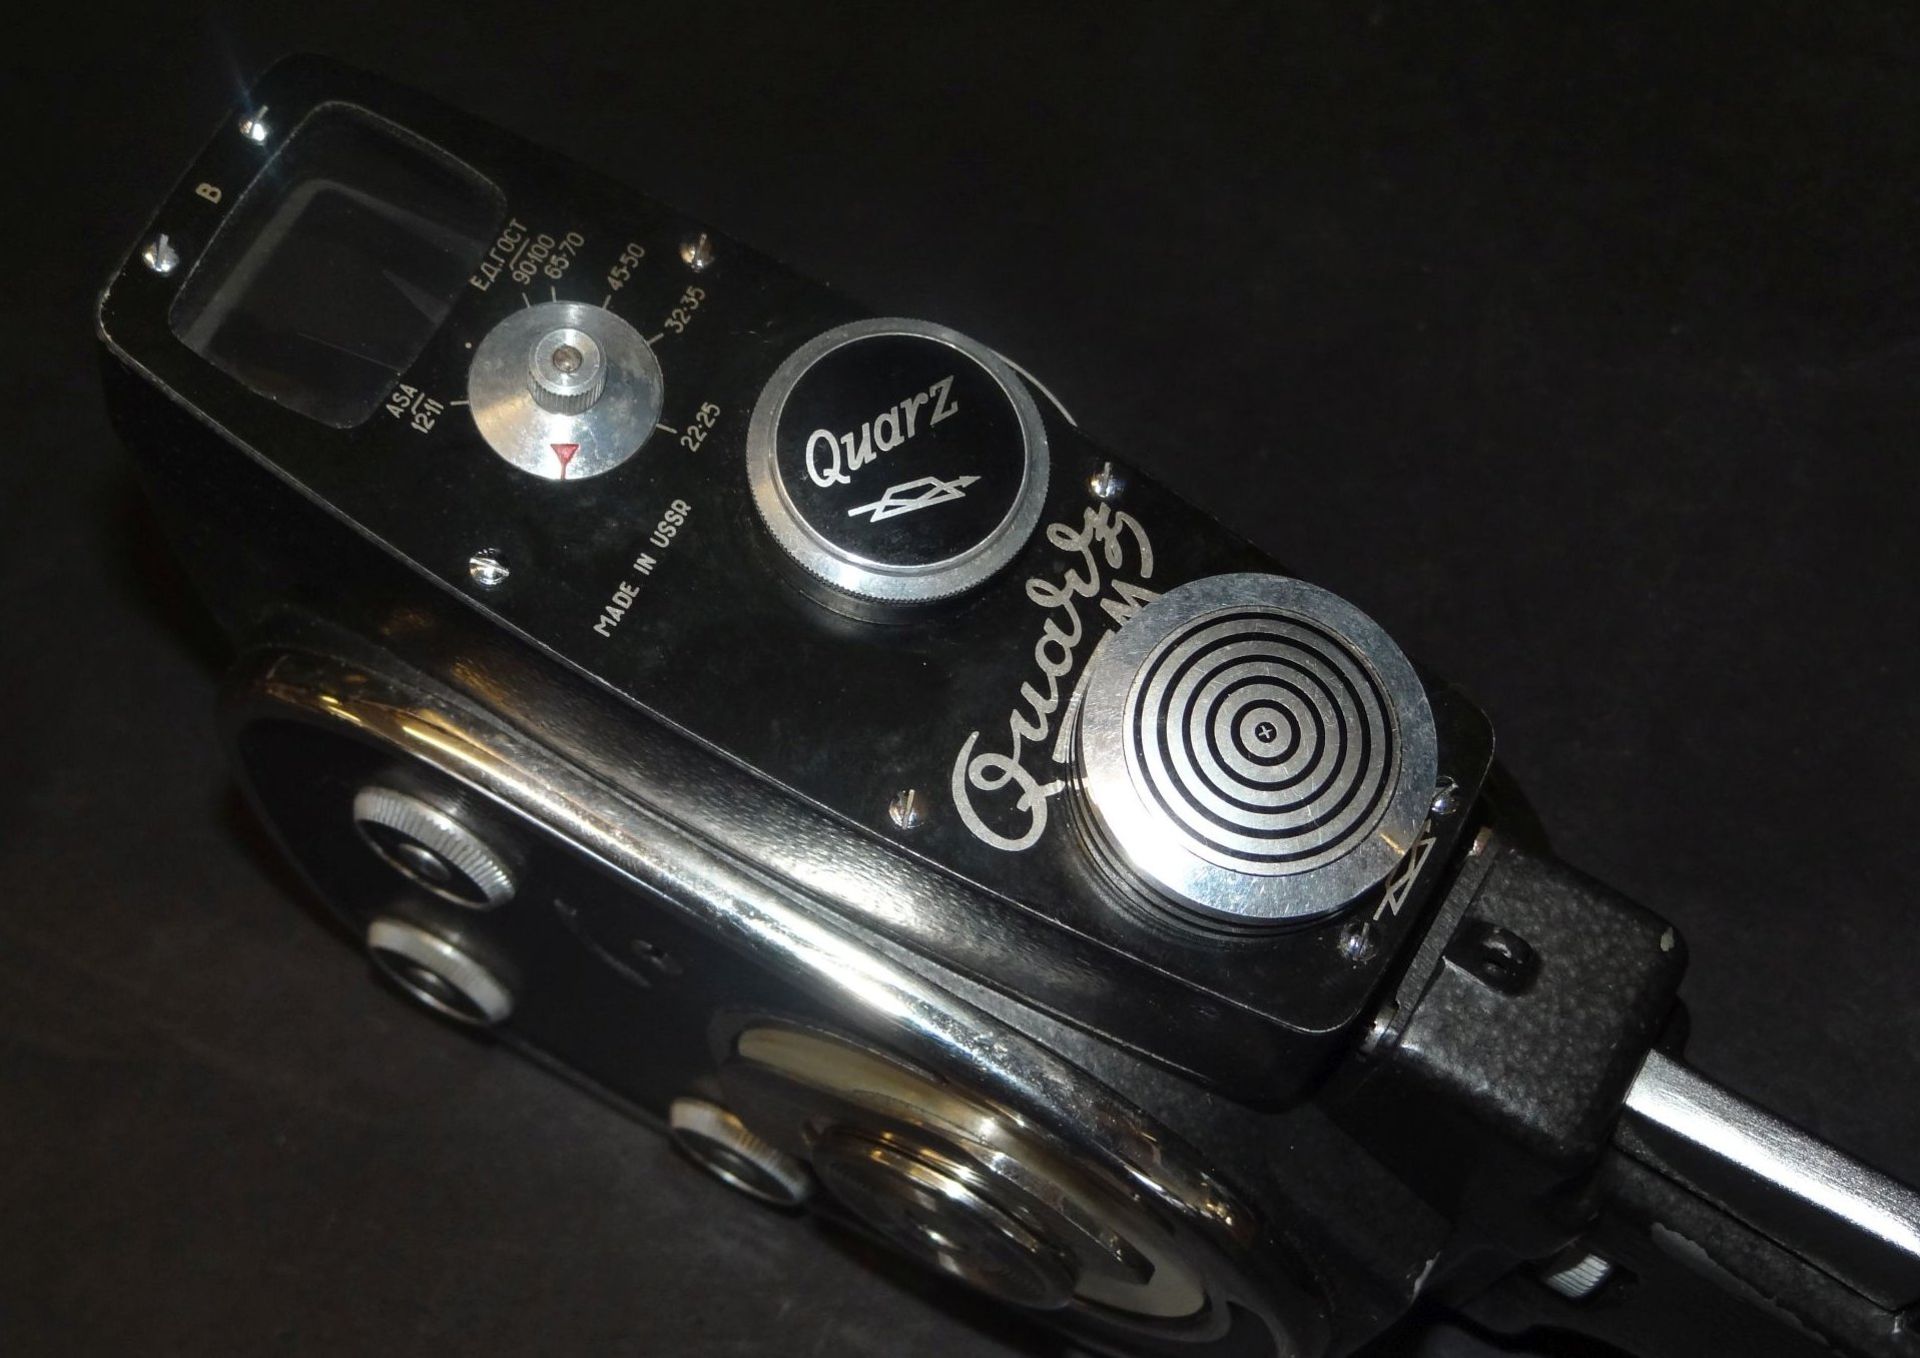 Filmkamera "Quarz M" 8 mm in orig. Tasche mit Garantieschein von 1969, Milano - Bild 4 aus 9